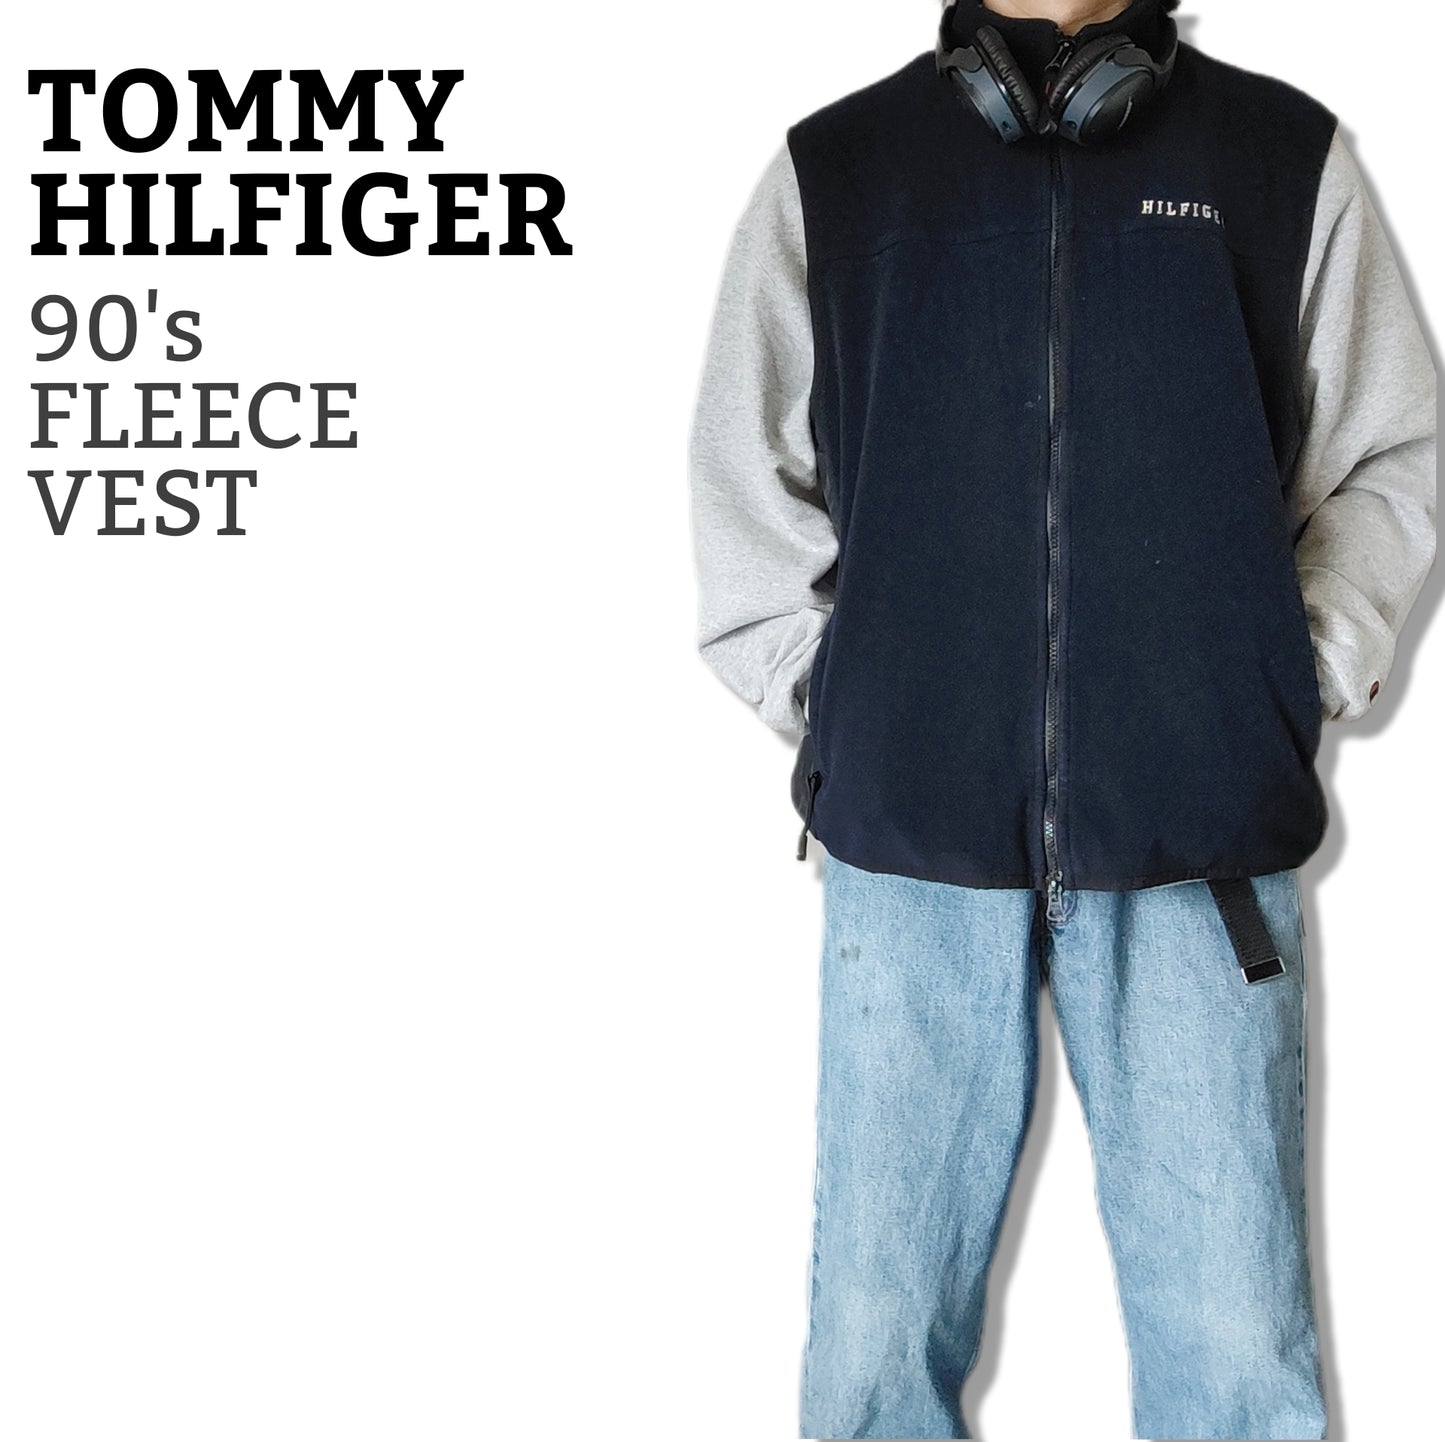 [TOMMY HILFIGER] 90's fleece vest